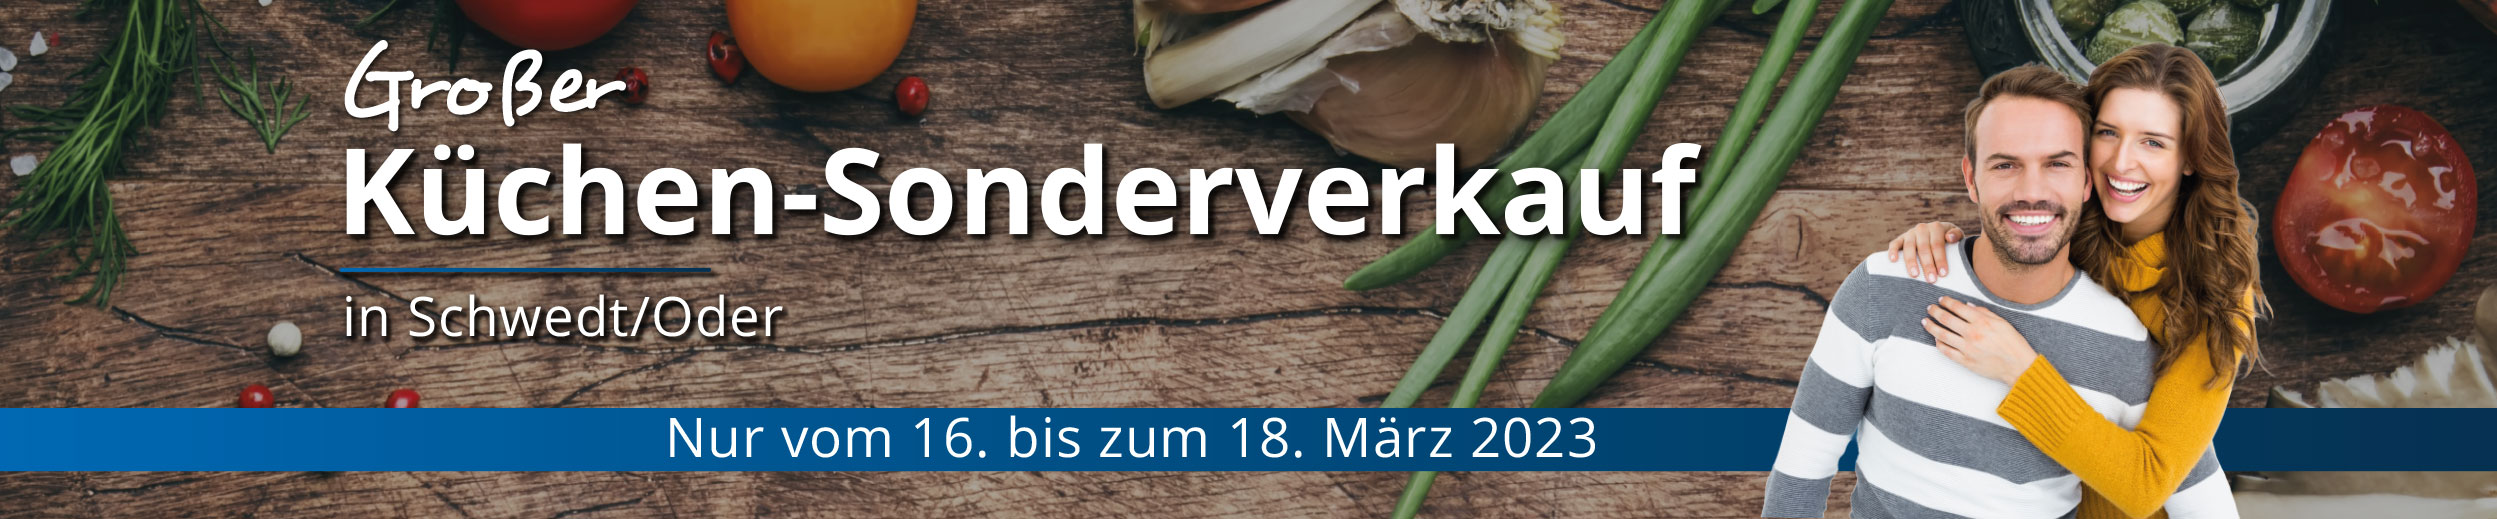 Großer Küchen-Sonderverkauf in Schwedt / Oder. Nur vom 16. - 18. März 2023. Jetzt richtig sparen!